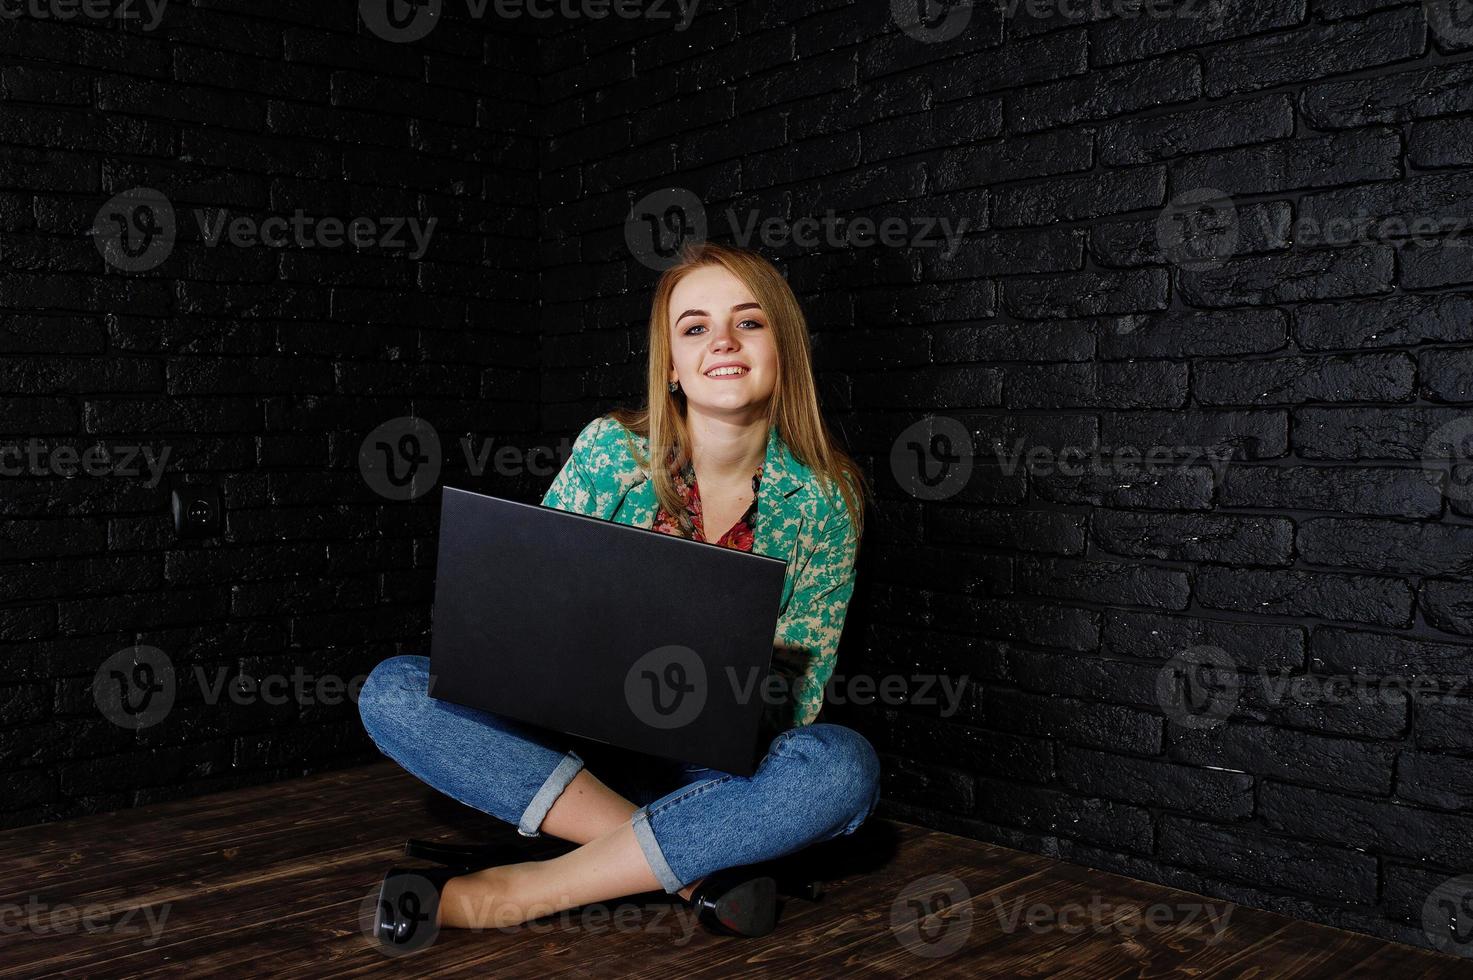 chica rubia con estilo en chaqueta y jeans con laptop contra pared negra de ladrillo en el estudio. foto